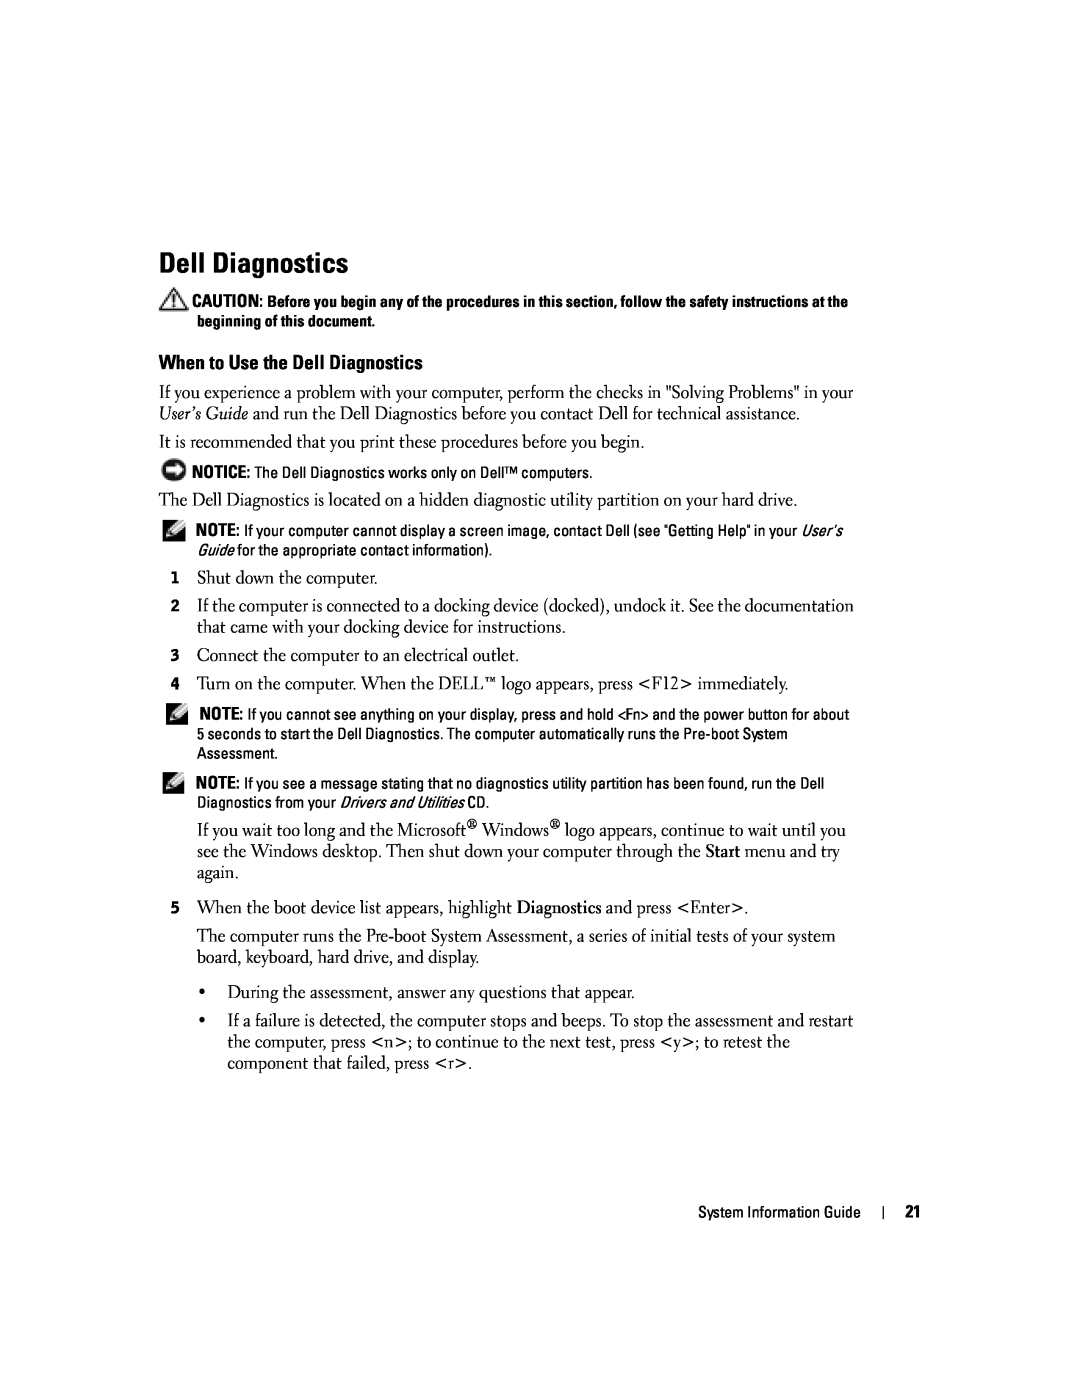 Dell D505 manual When to Use the Dell Diagnostics 